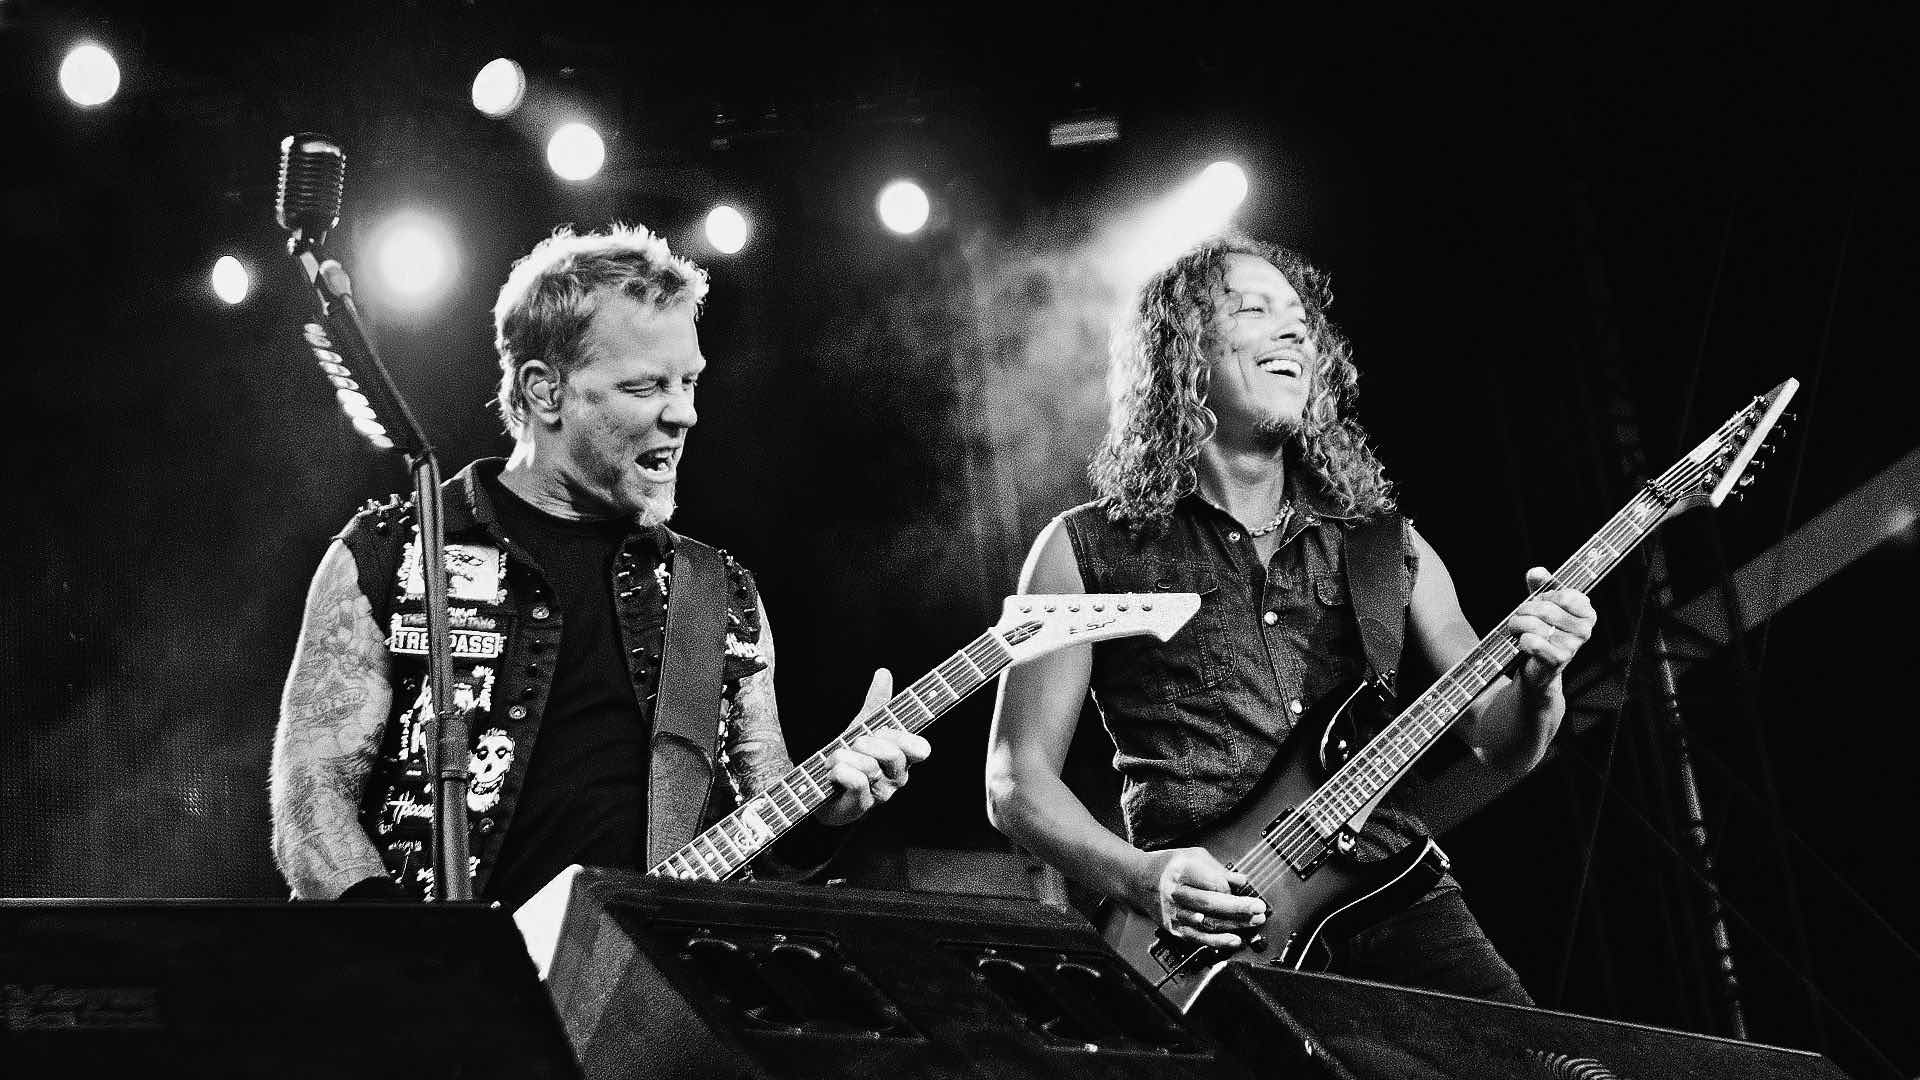 #MañanasX: ¿Cómo van los números de reproducciones de las versiones hechas del Black Álbum de Metallica?